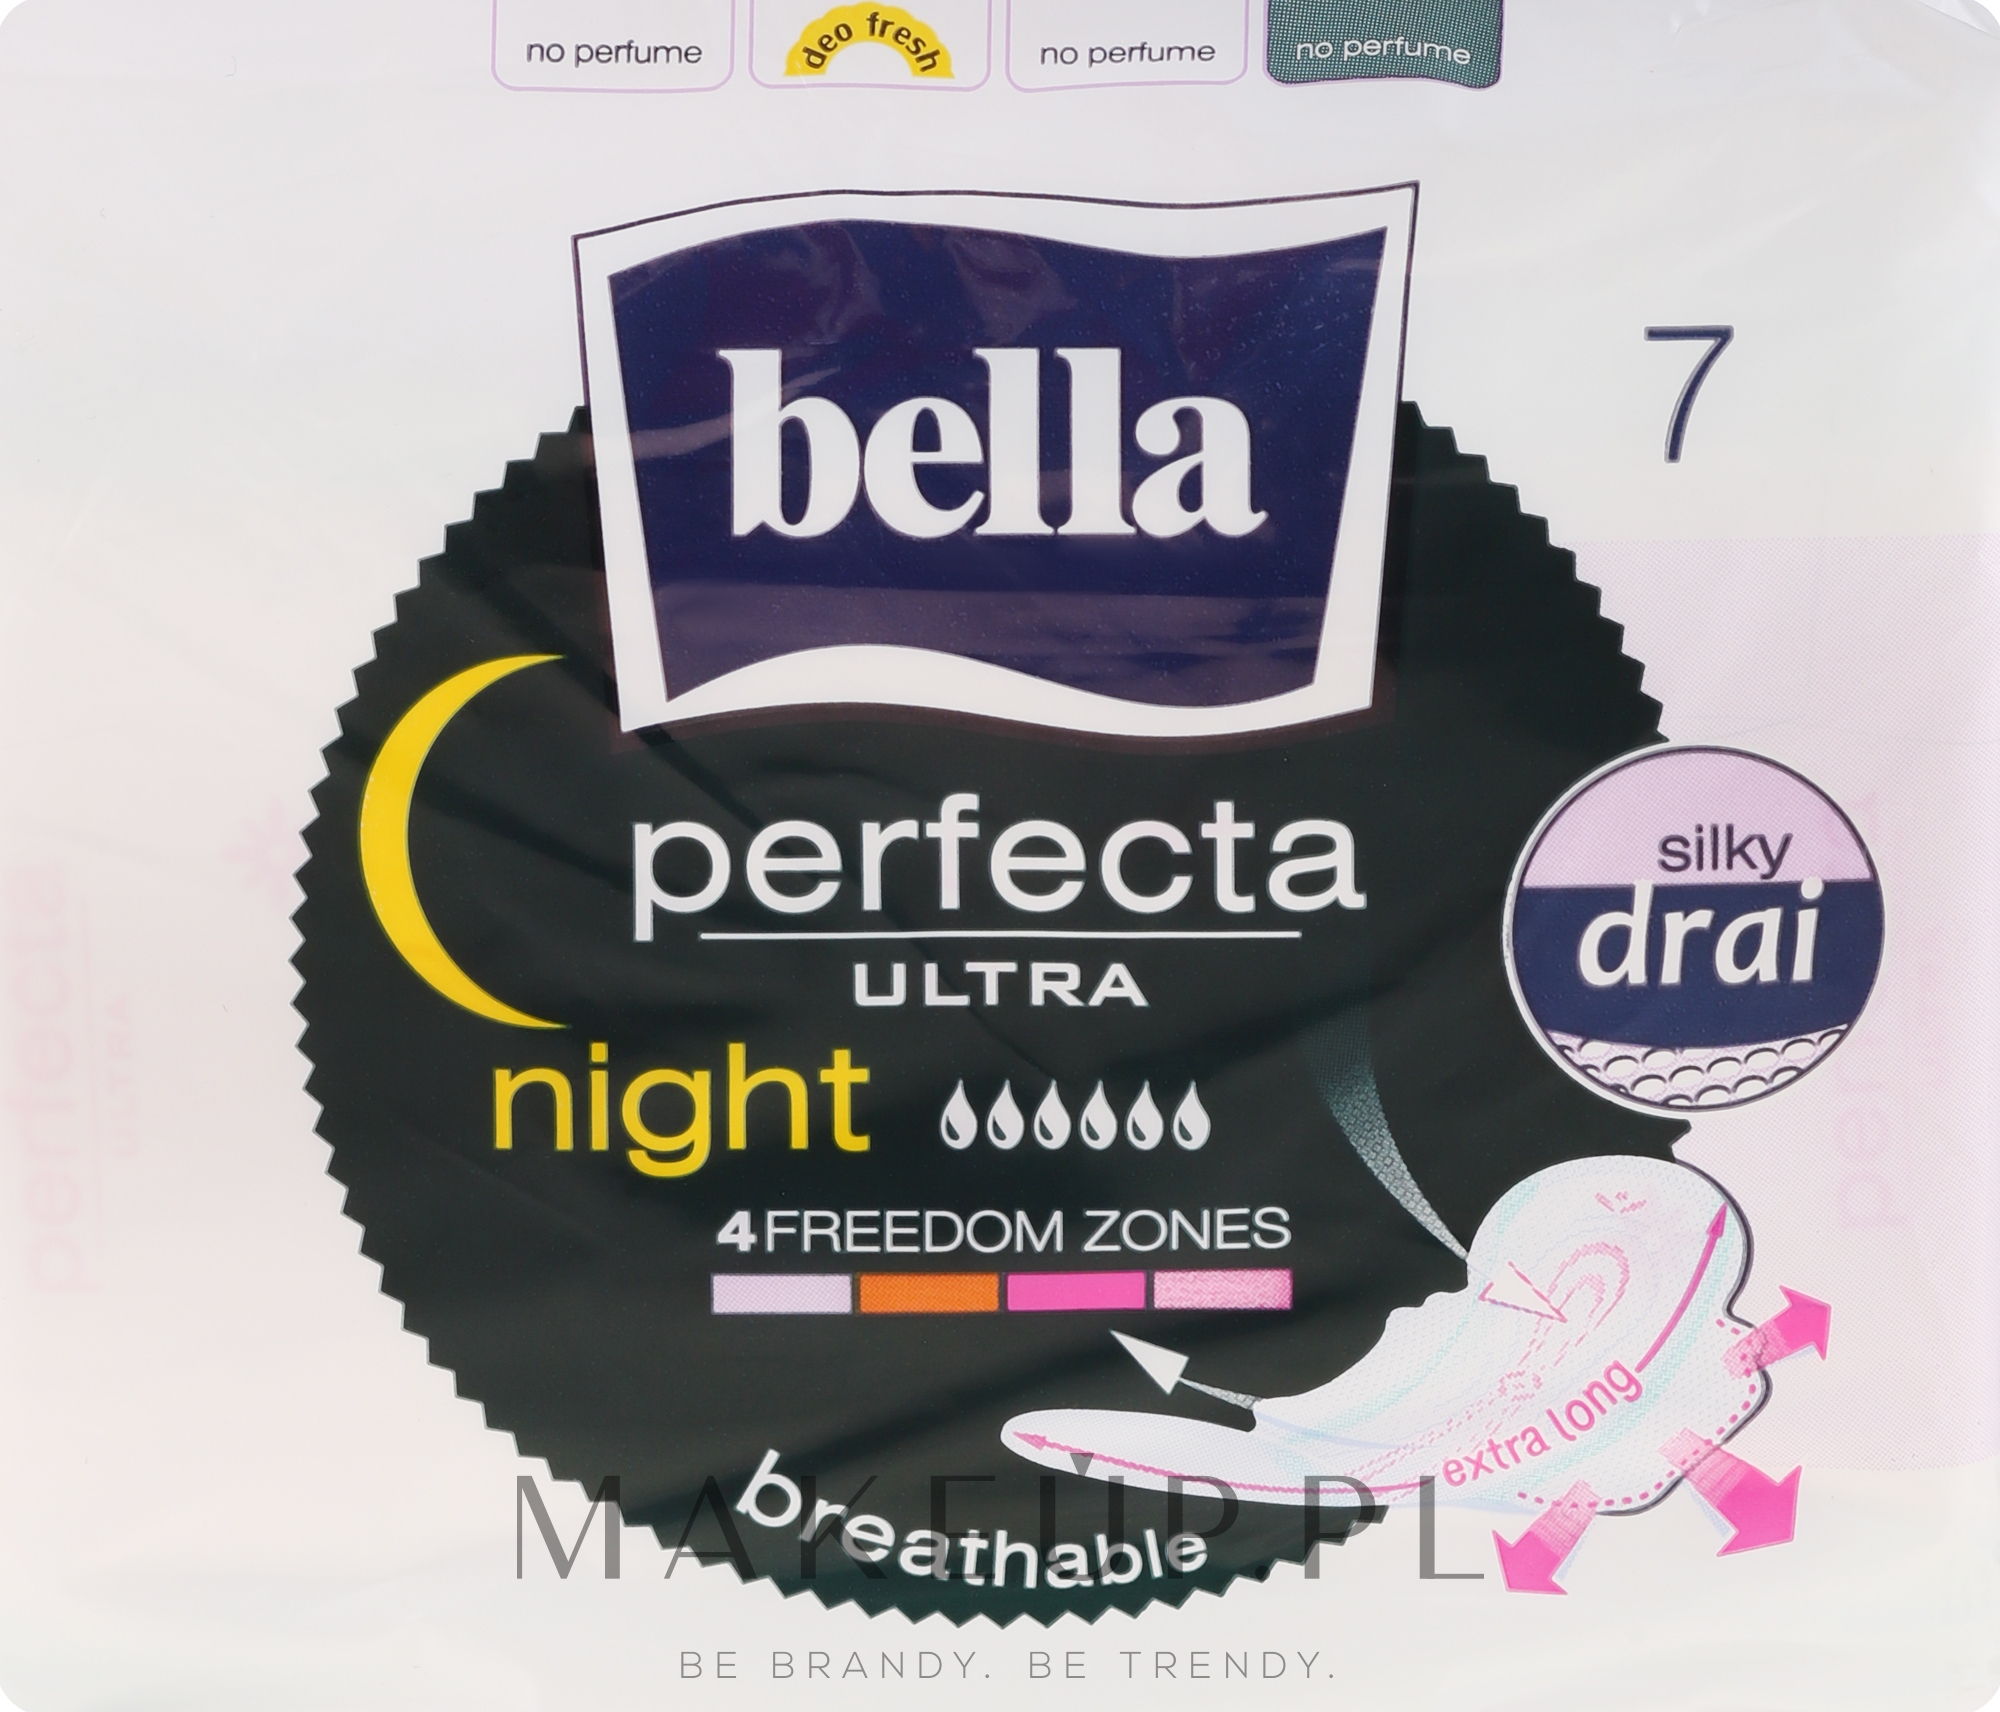 Podpaski Perfecta Night & Drain Ultra, 7 szt. - Bella — Zdjęcie 7 szt.